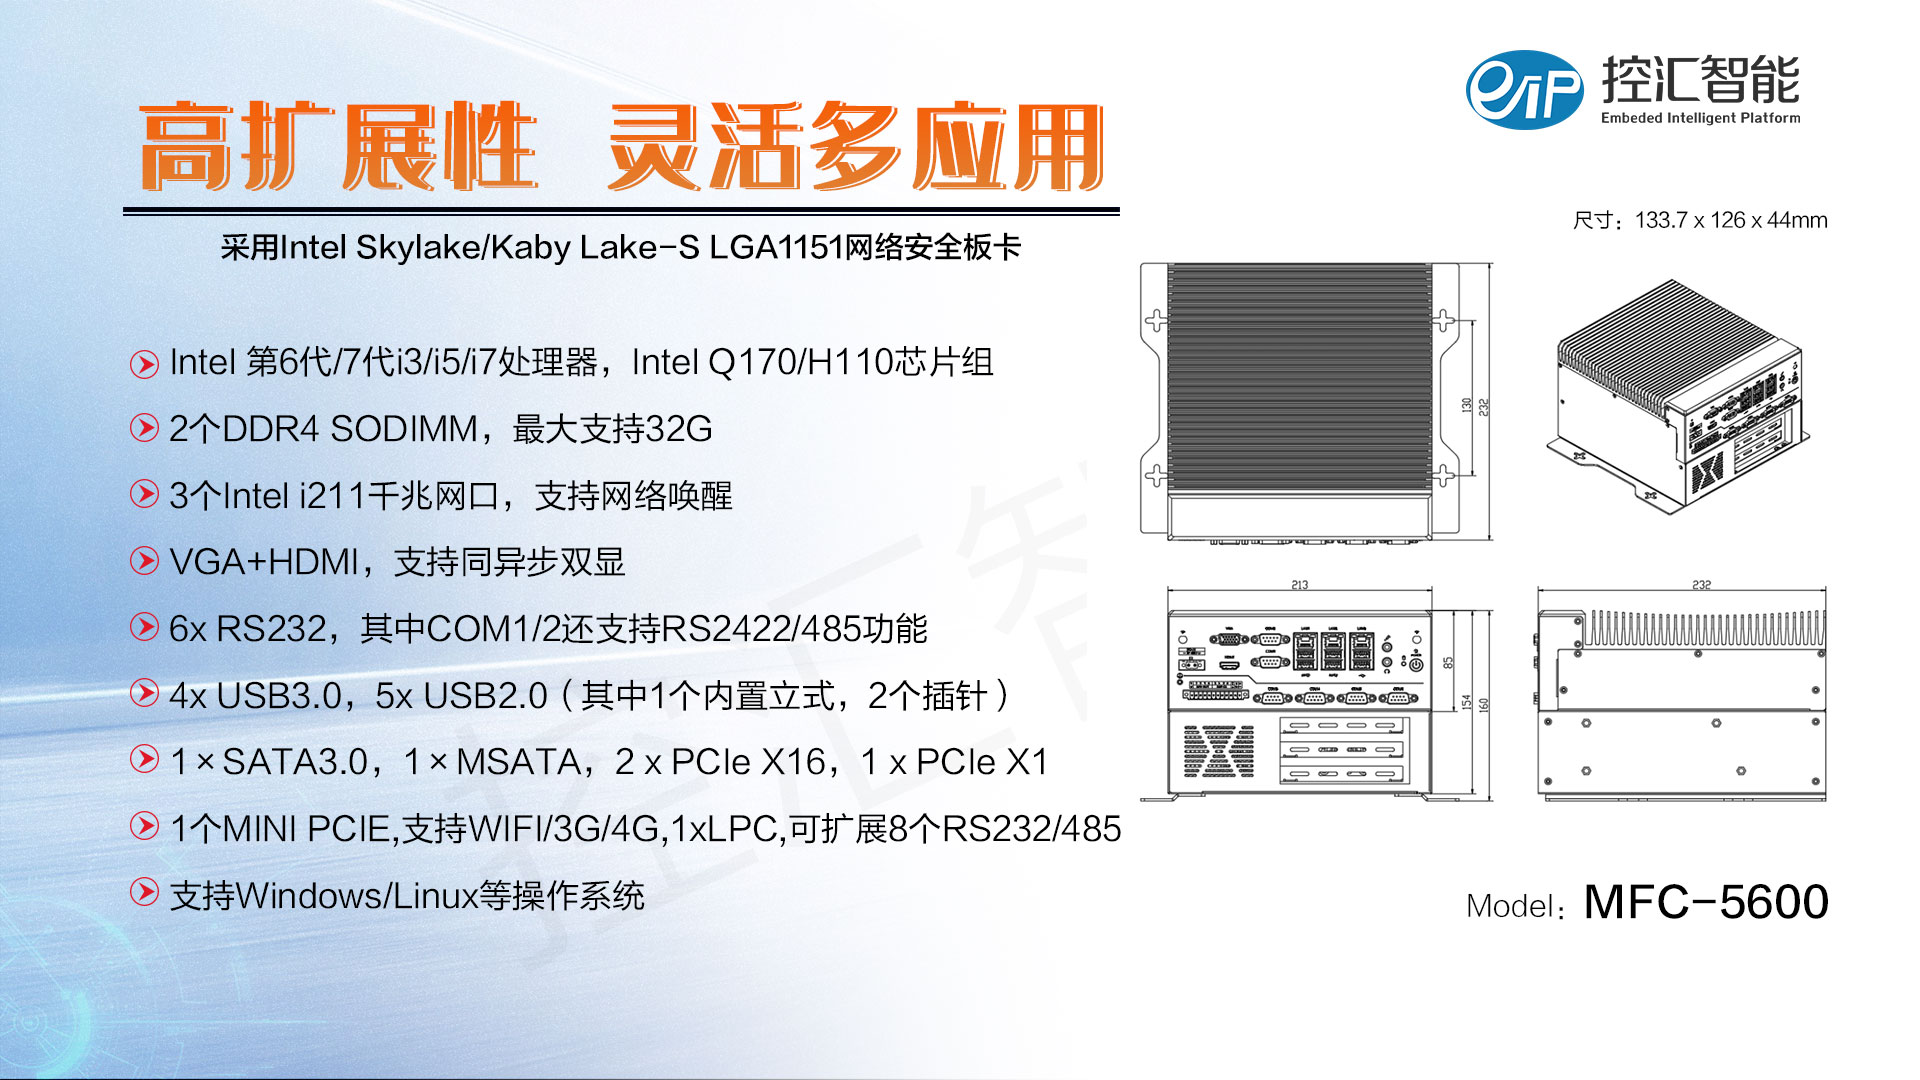 【新品预告】6/7代处理器MFC-5600无风扇嵌入式工控机